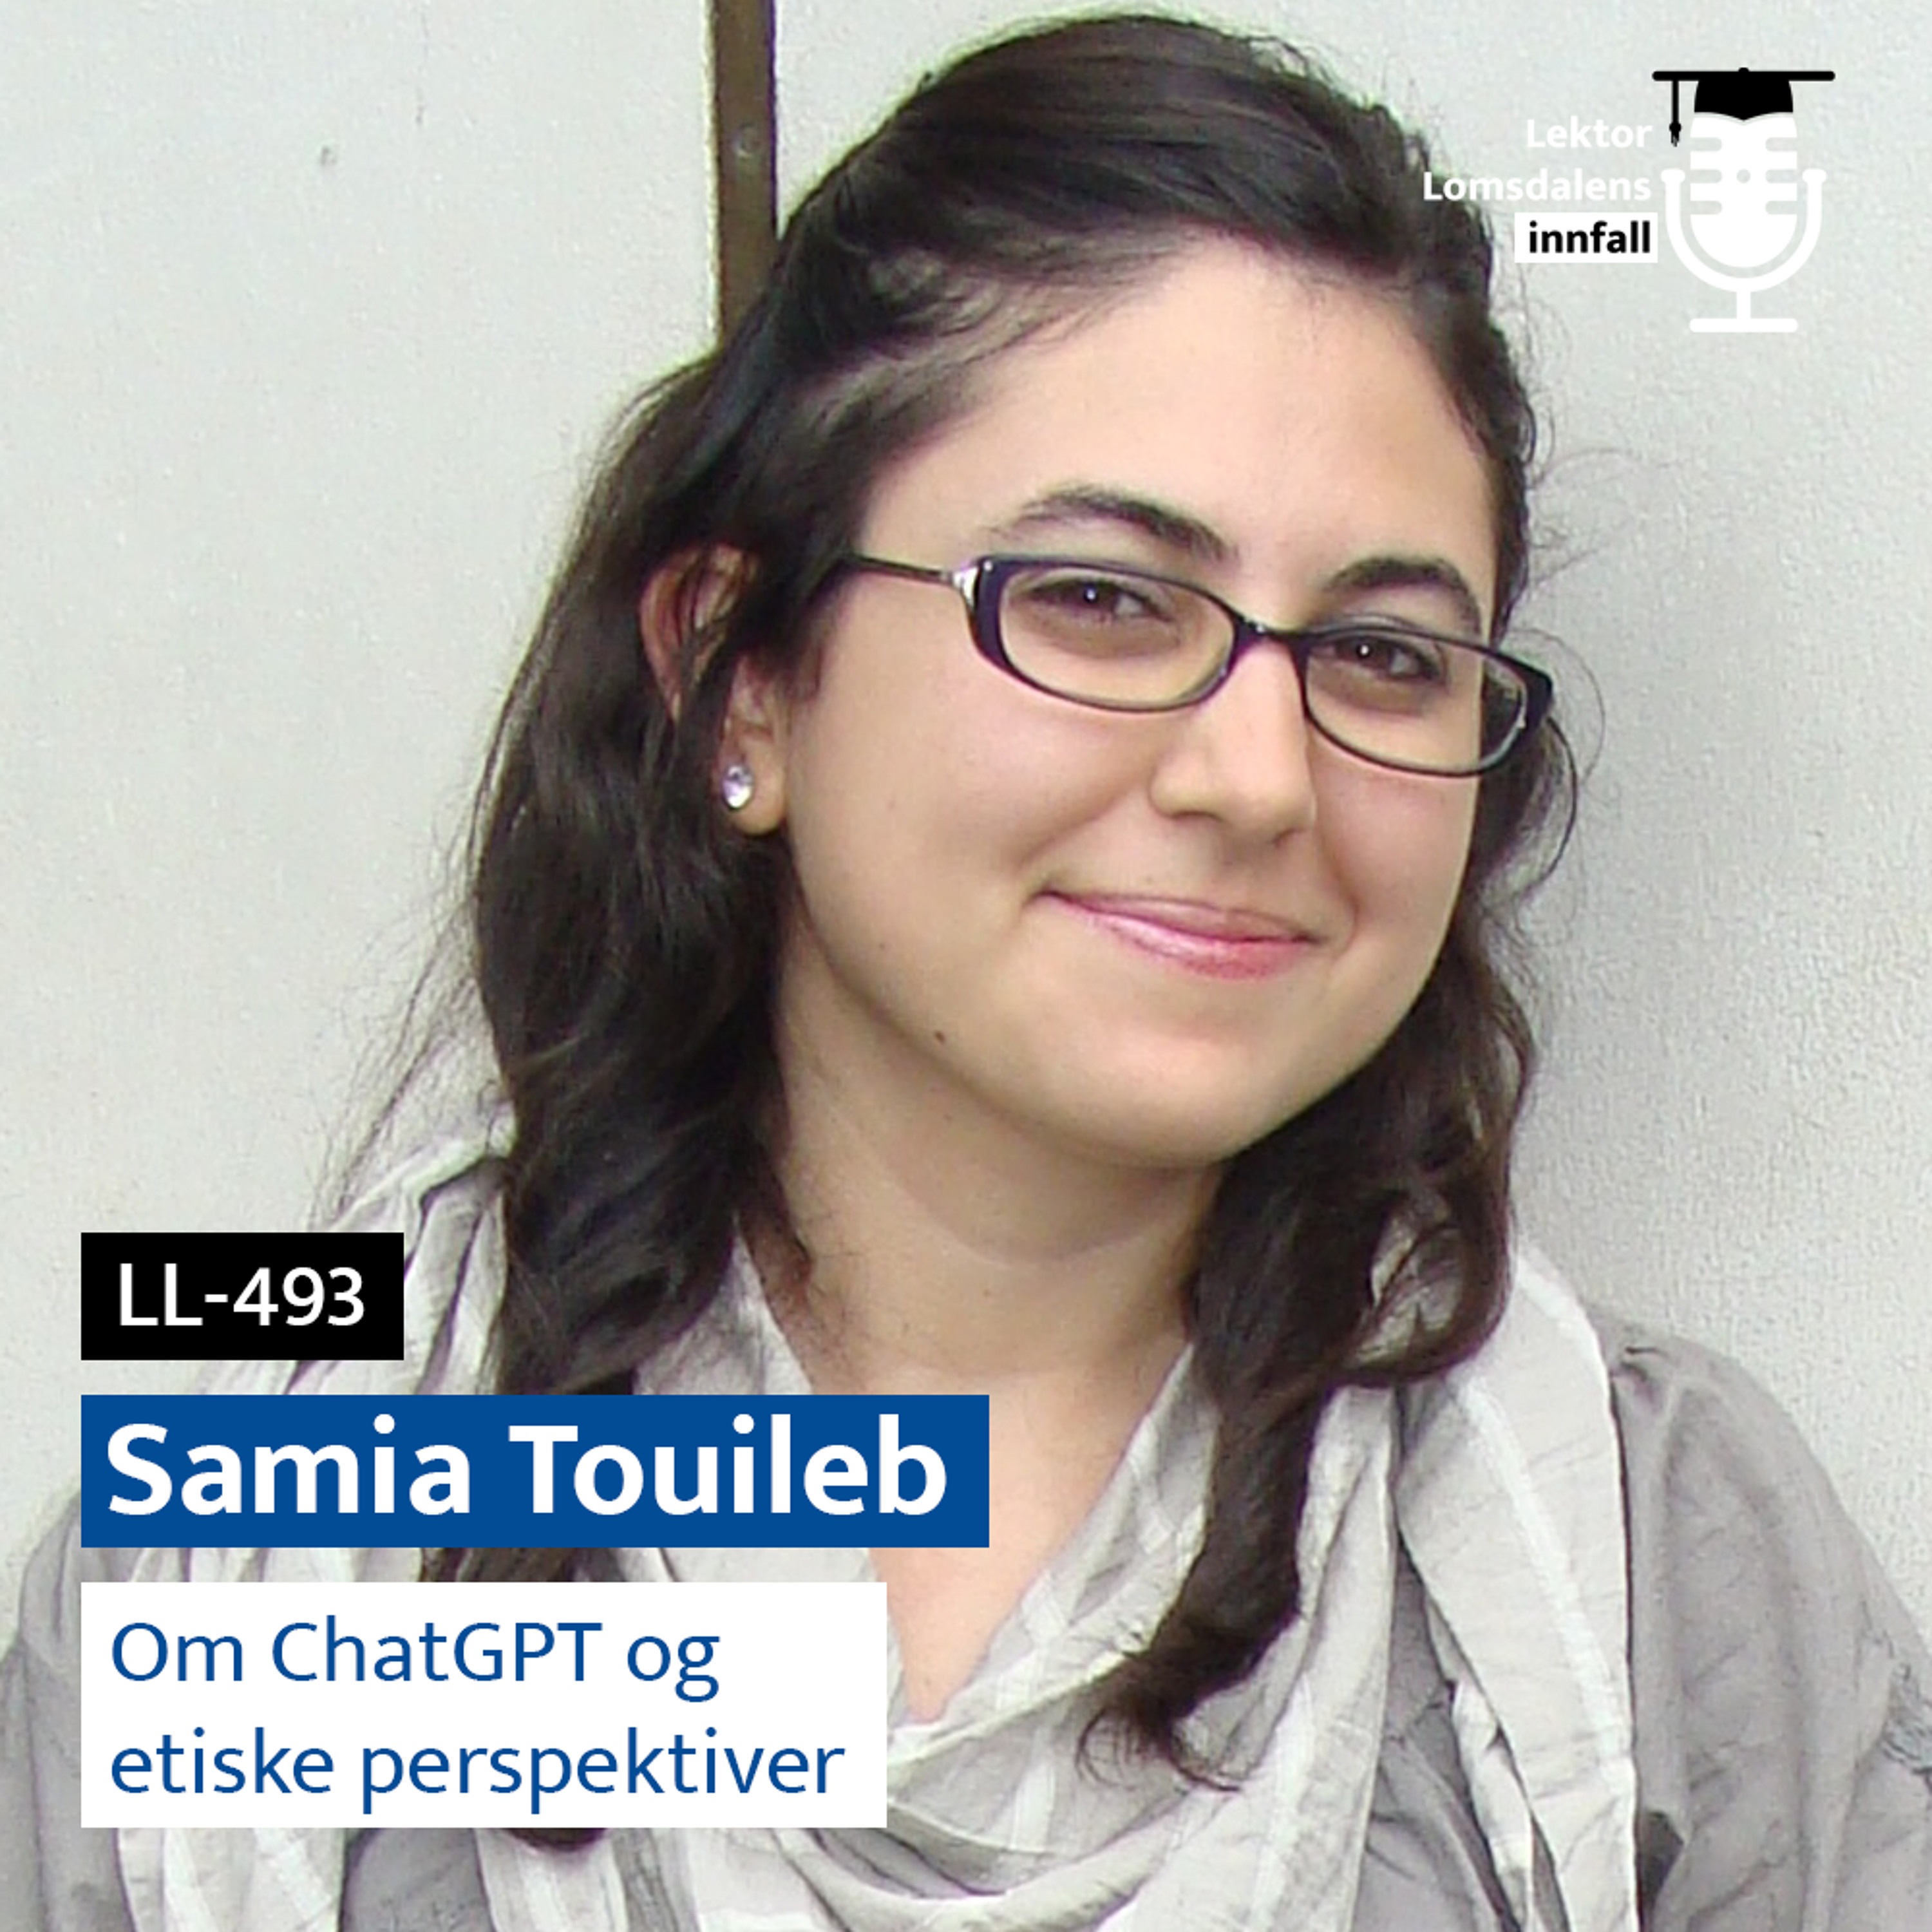 LL-493: Samia Touileb om ChatGPT og etiske perspektiver